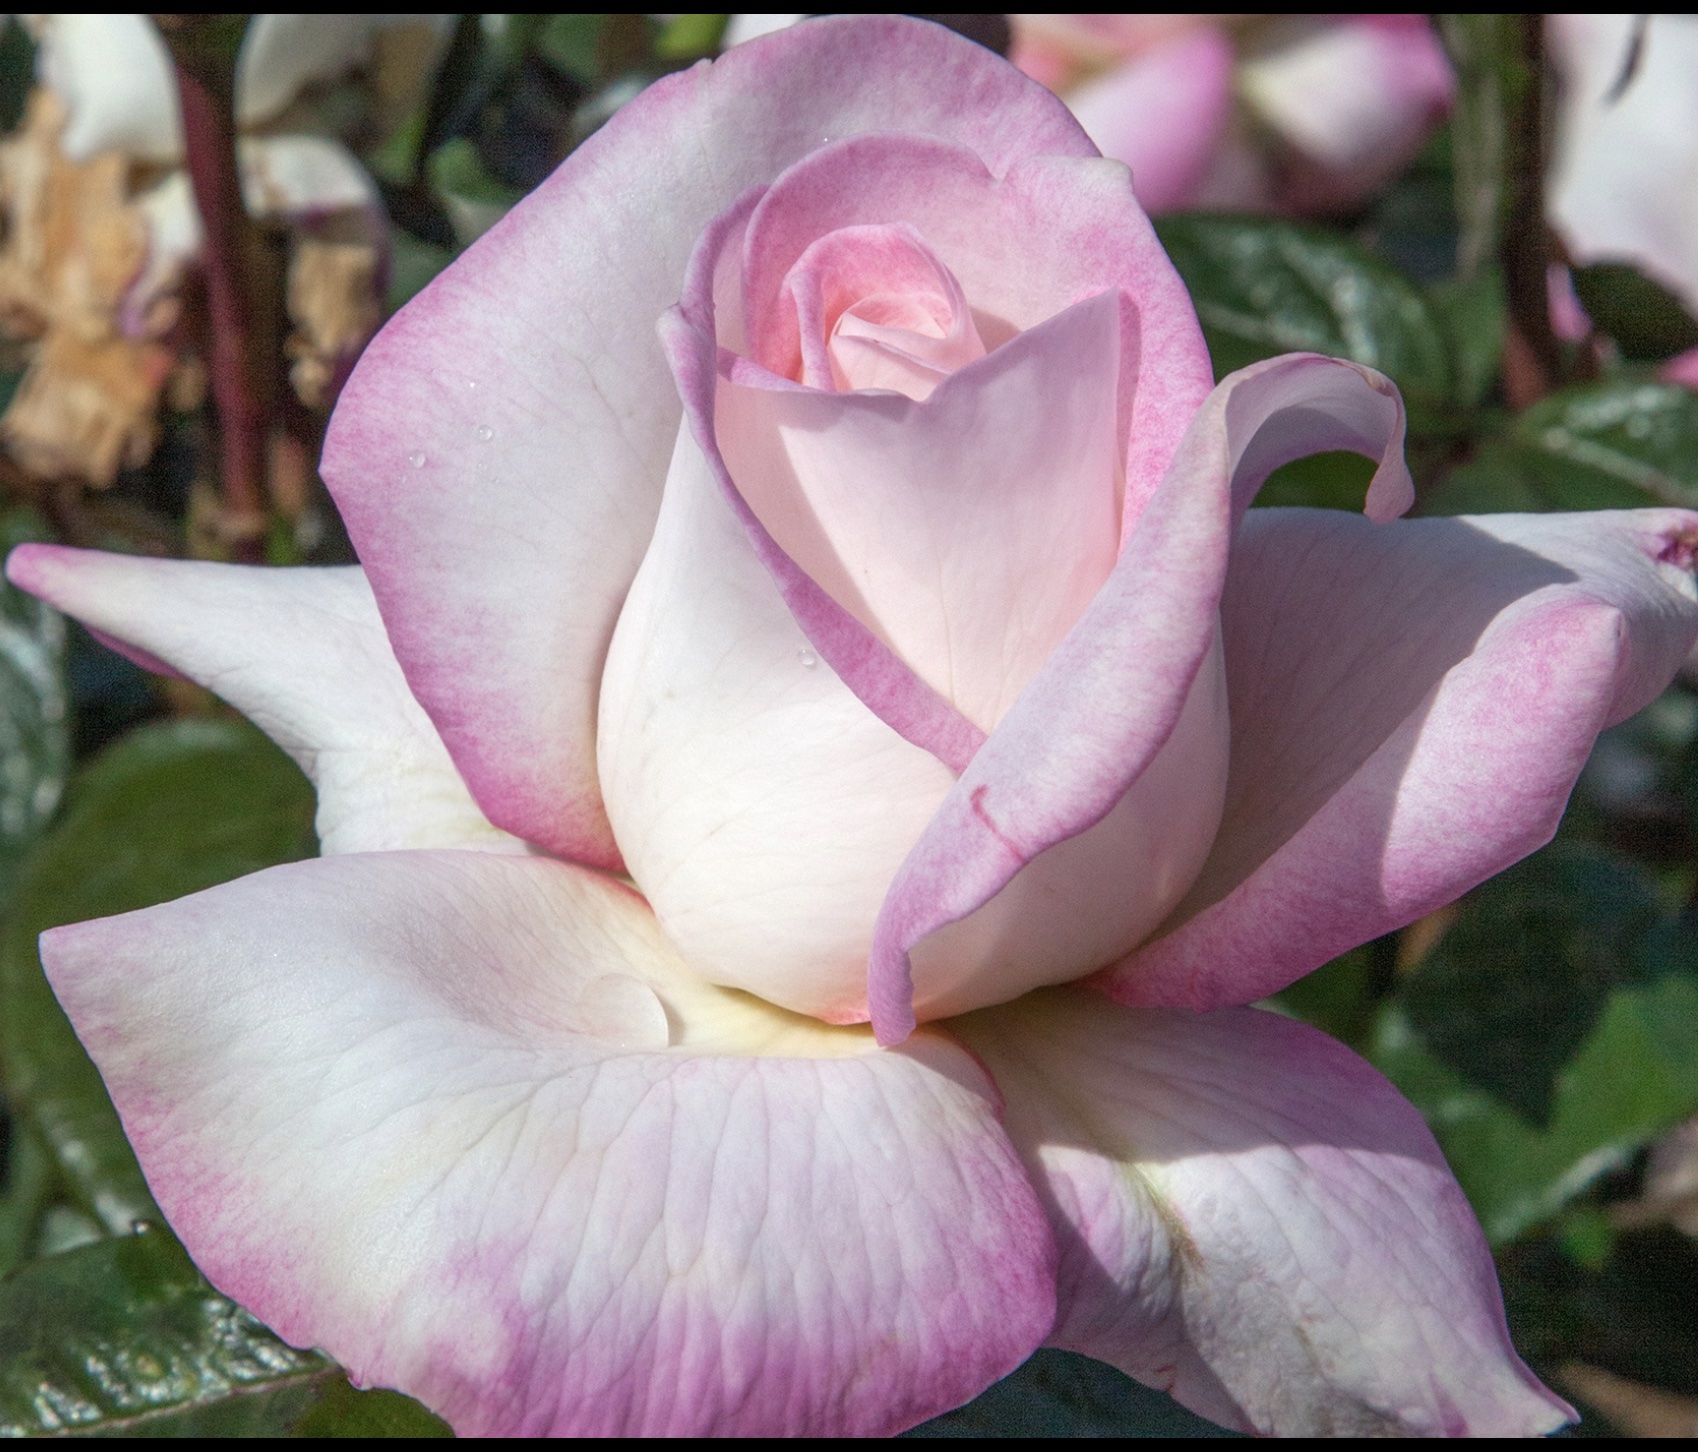 All My Loving Hybrid Tea Rose - Buy Roses